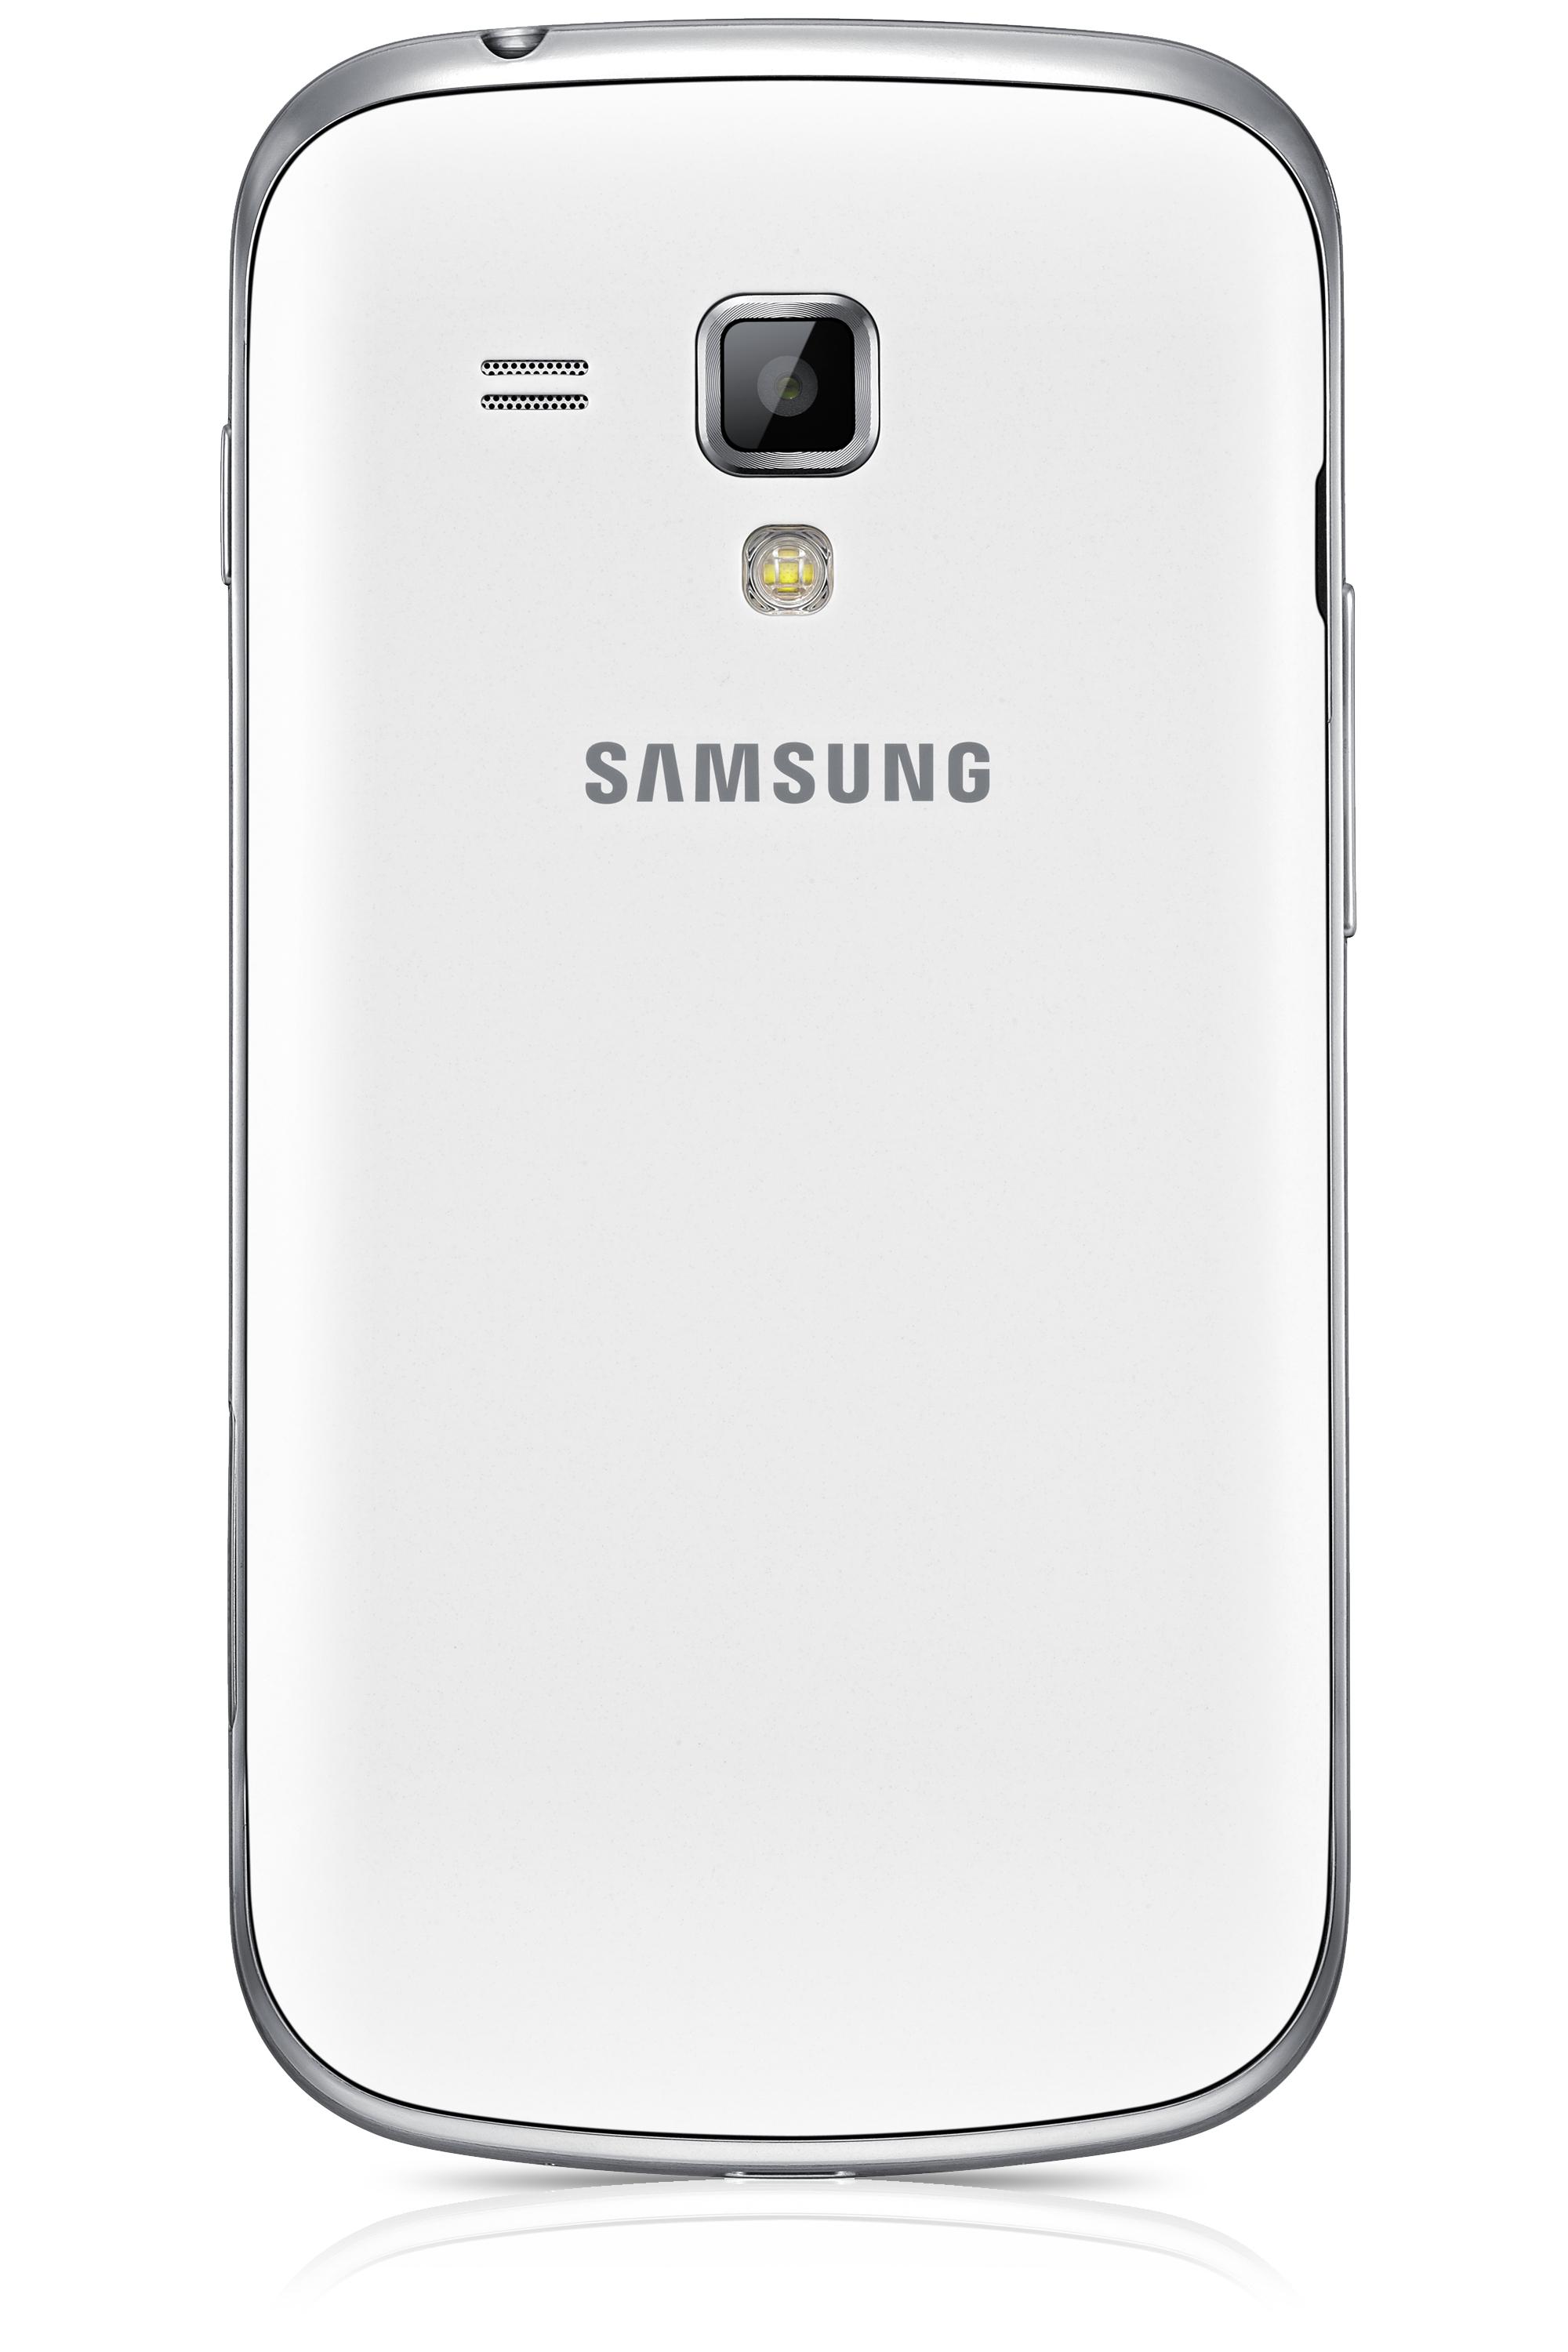 Foto Samsung Galaxy S Duos S7562 foto 26840